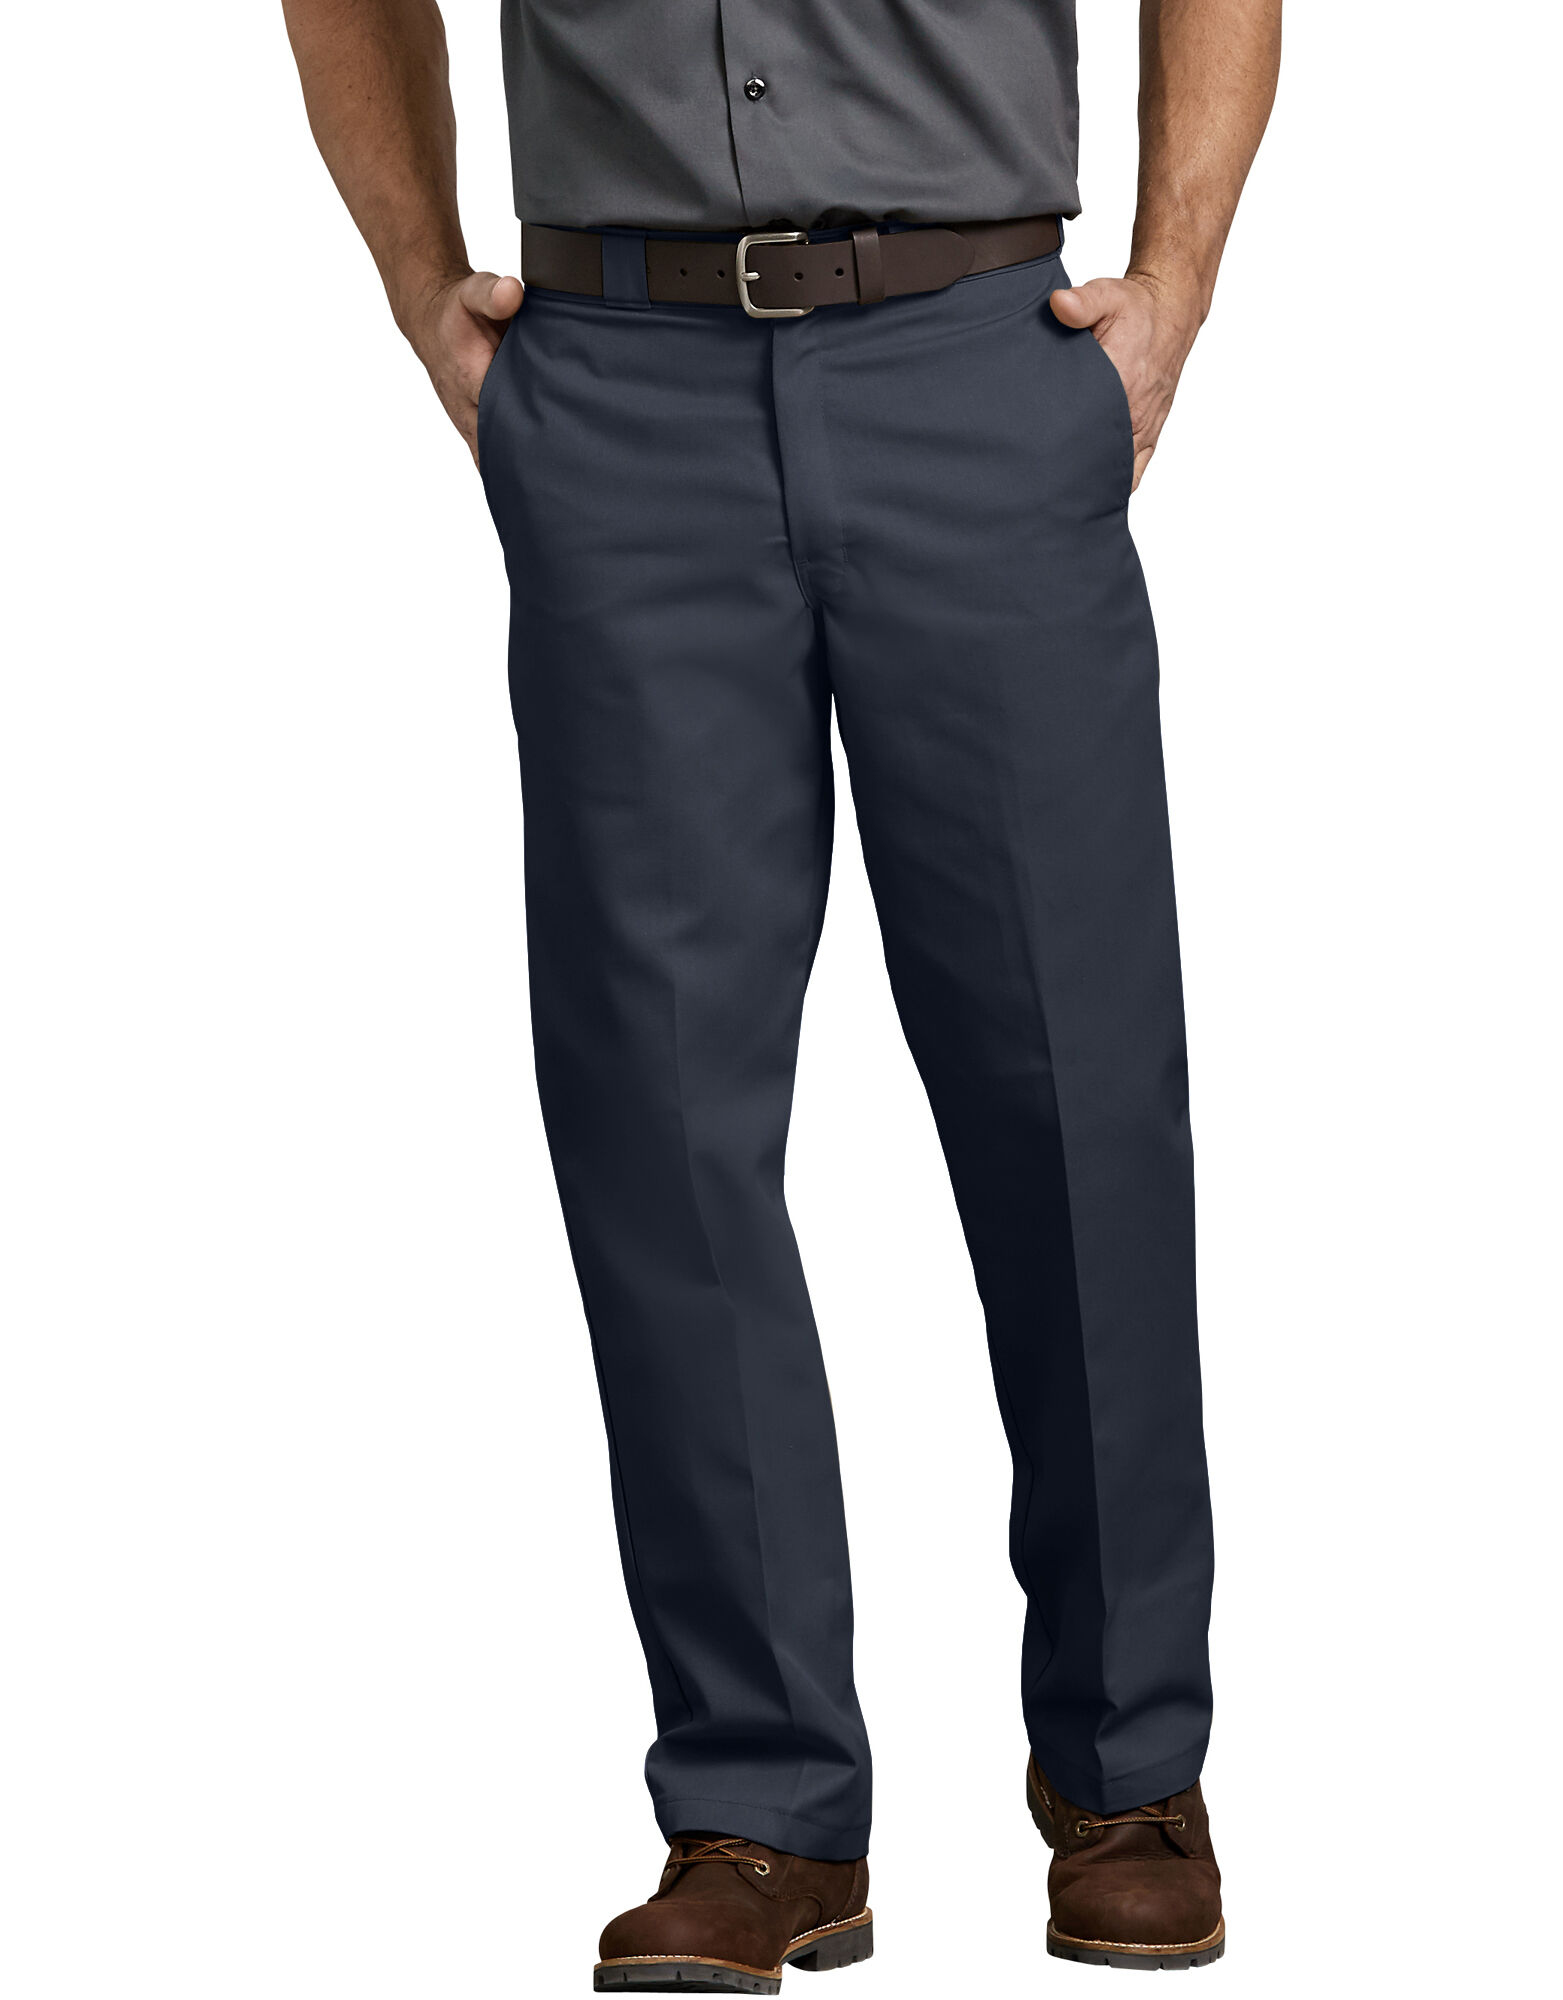 New 33R Dickies Men's GDT290 Multi Pocket Workwear Trousers Grey/Black